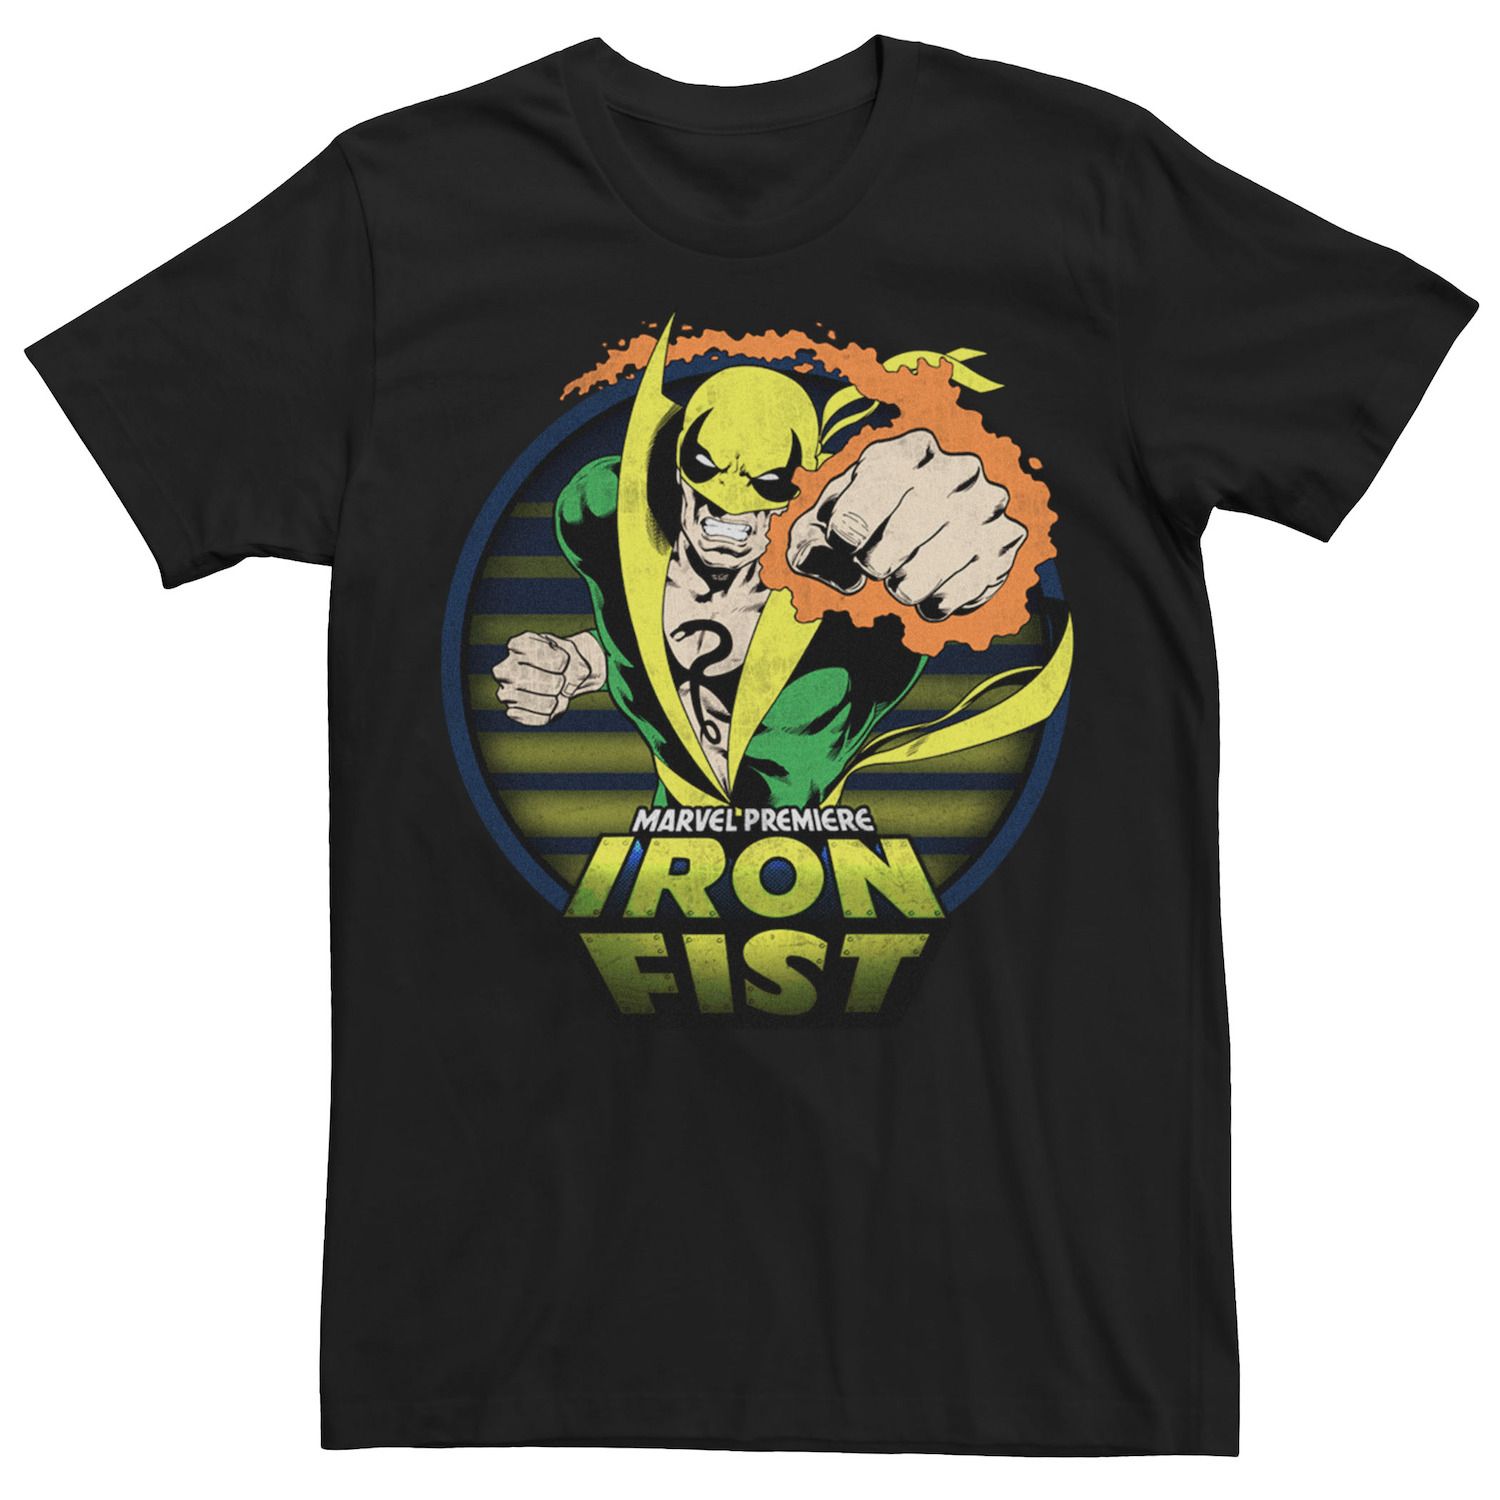 Мужская футболка с графическим рисунком Marvel Iron Fist Premiere printio футболка с полной запечаткой мужская iron fist